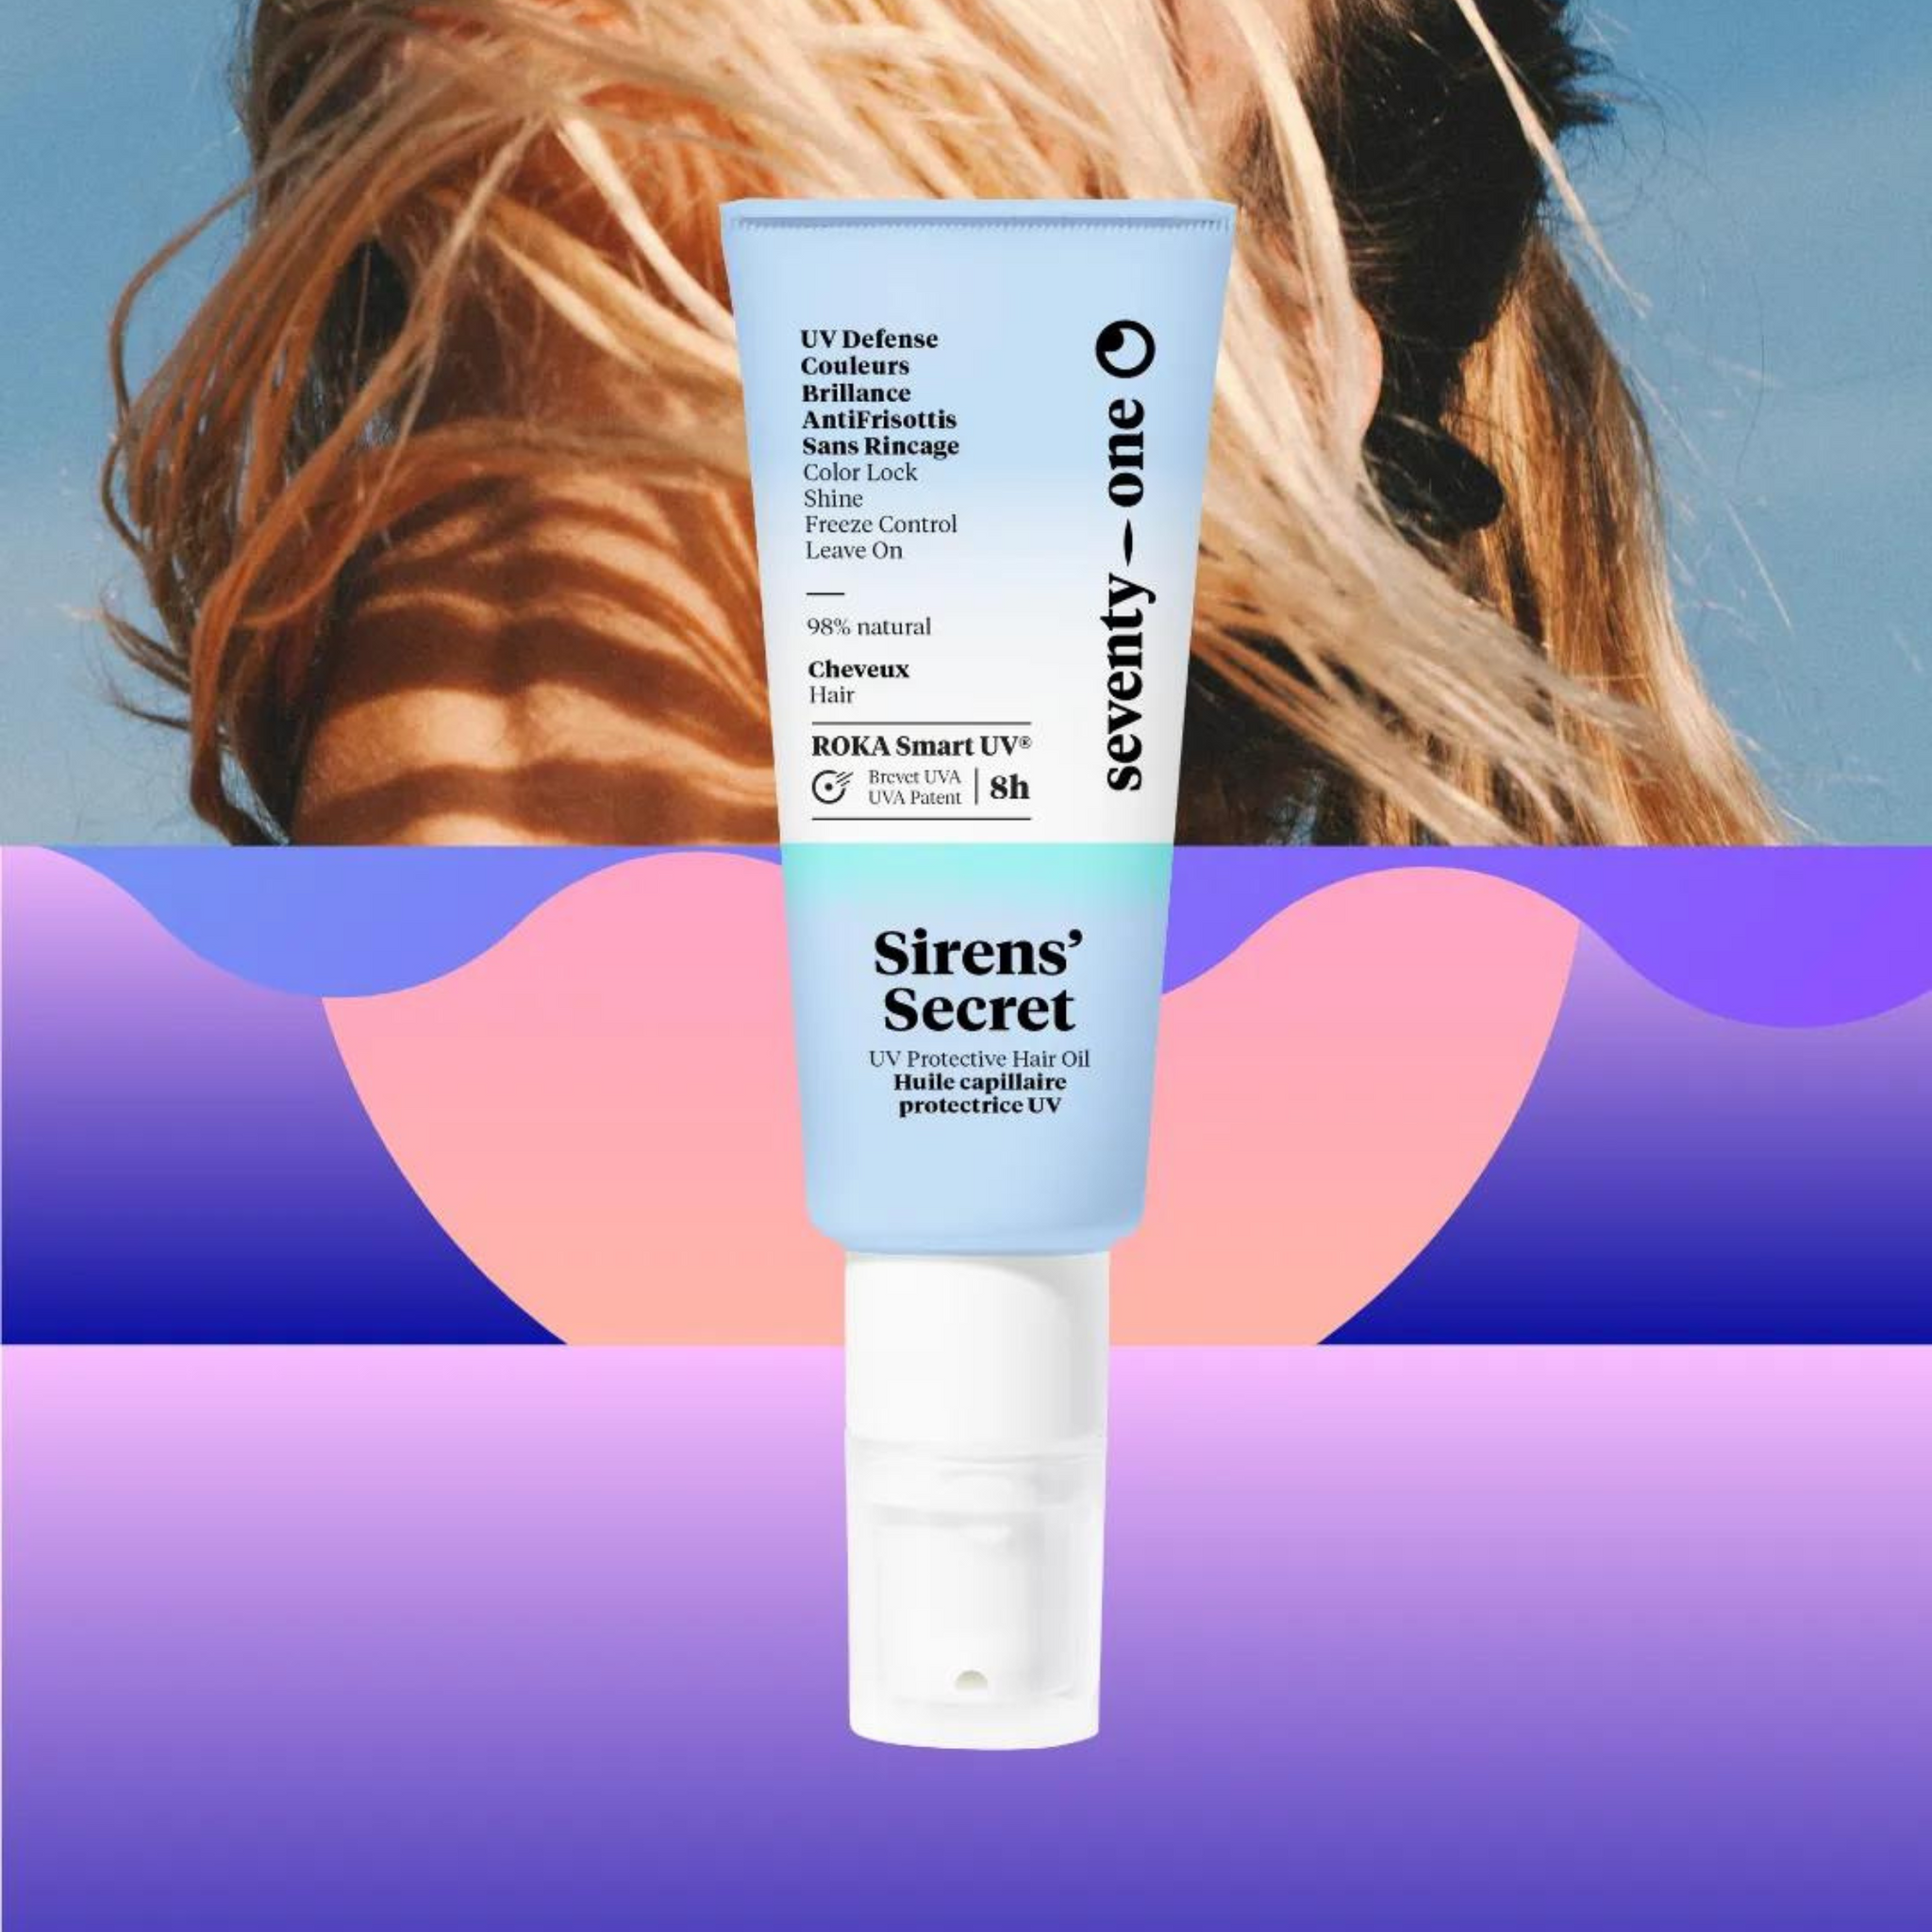 UV Protective hair oil